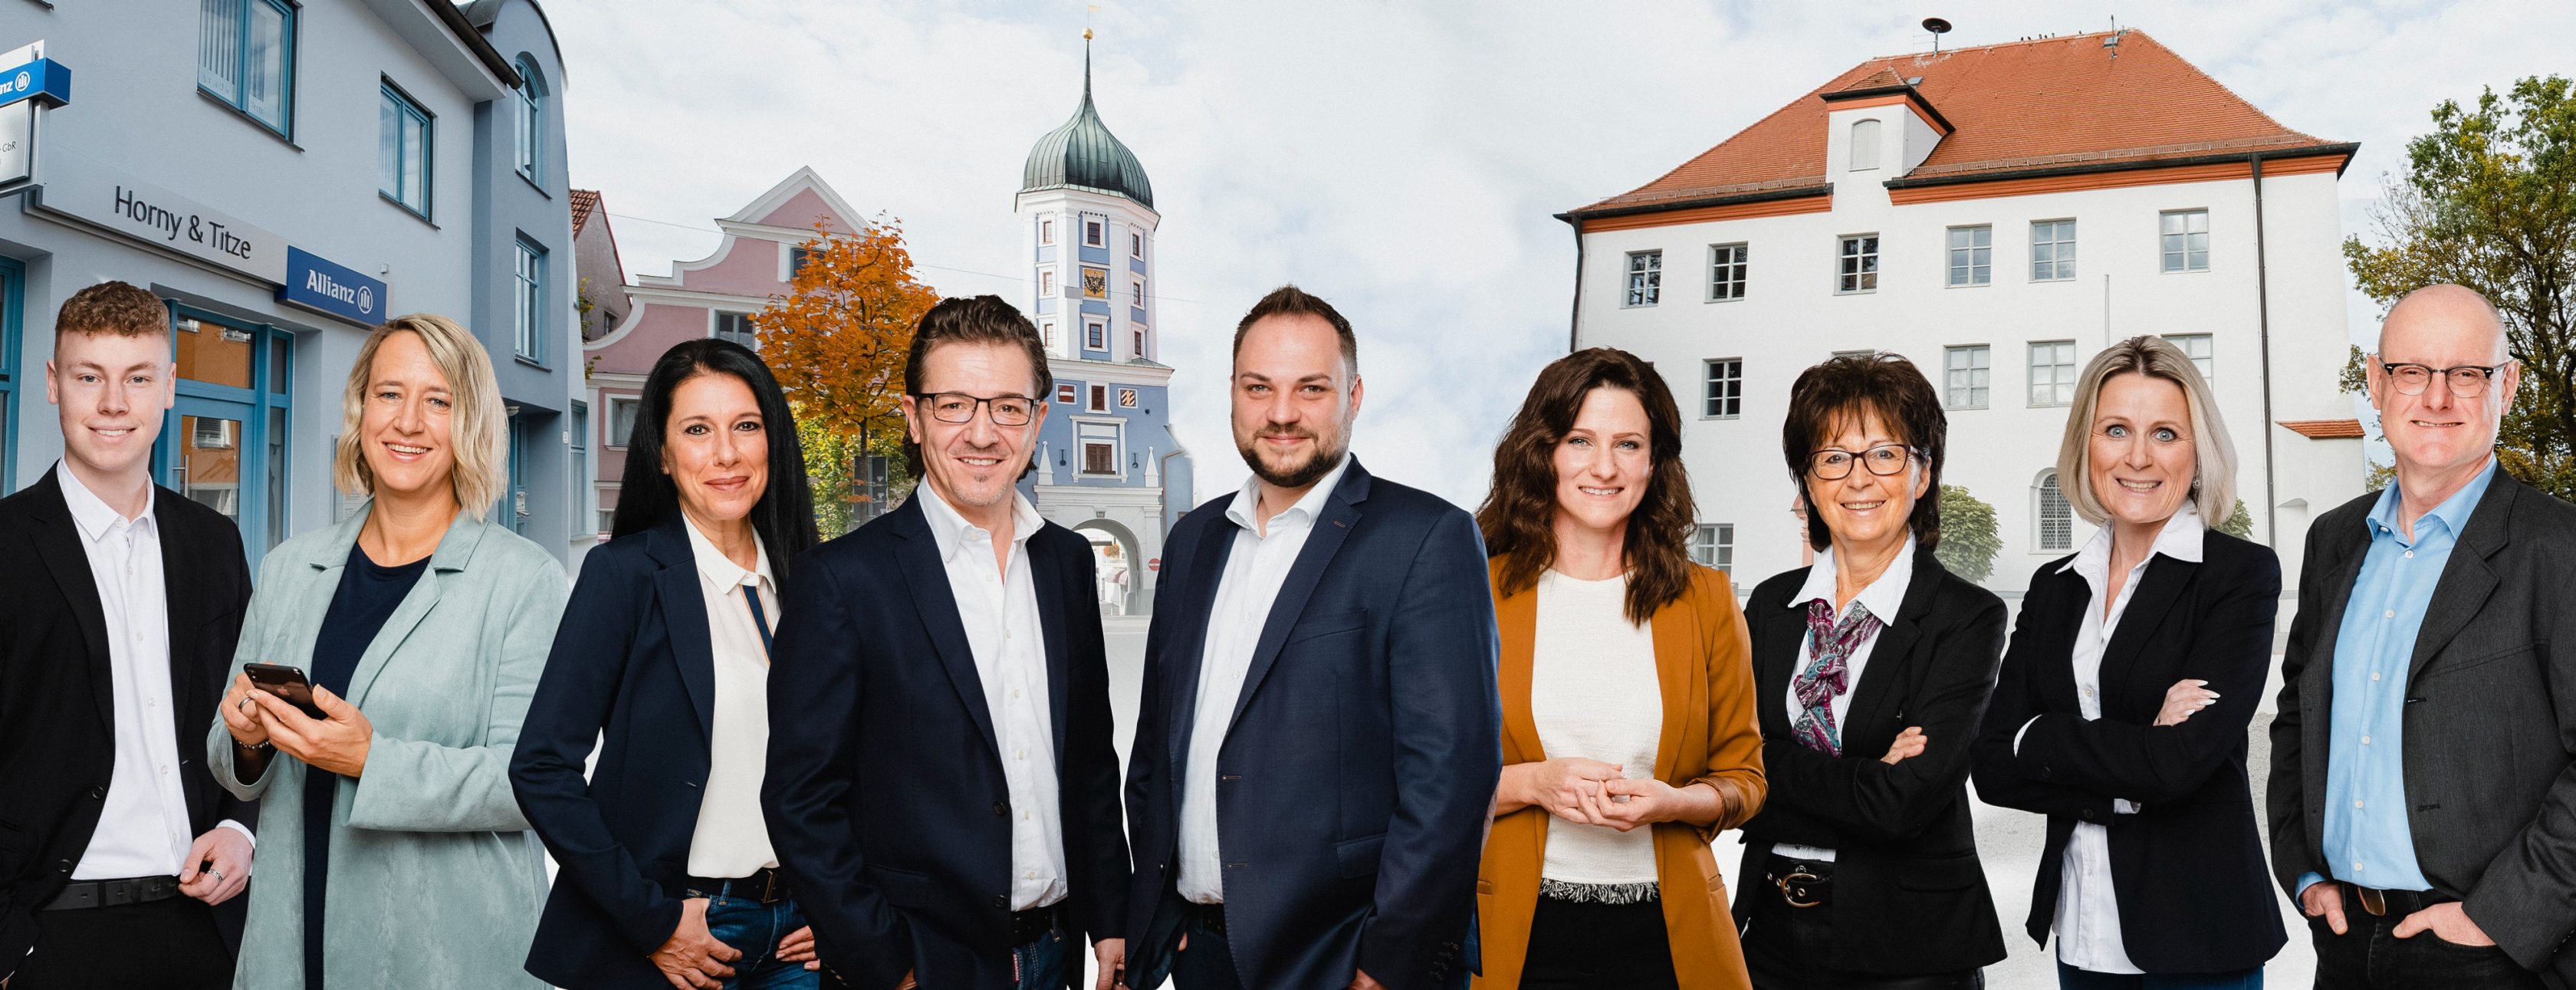 Allianz Versicherung Horny und Titze GbR Burgau - Team 